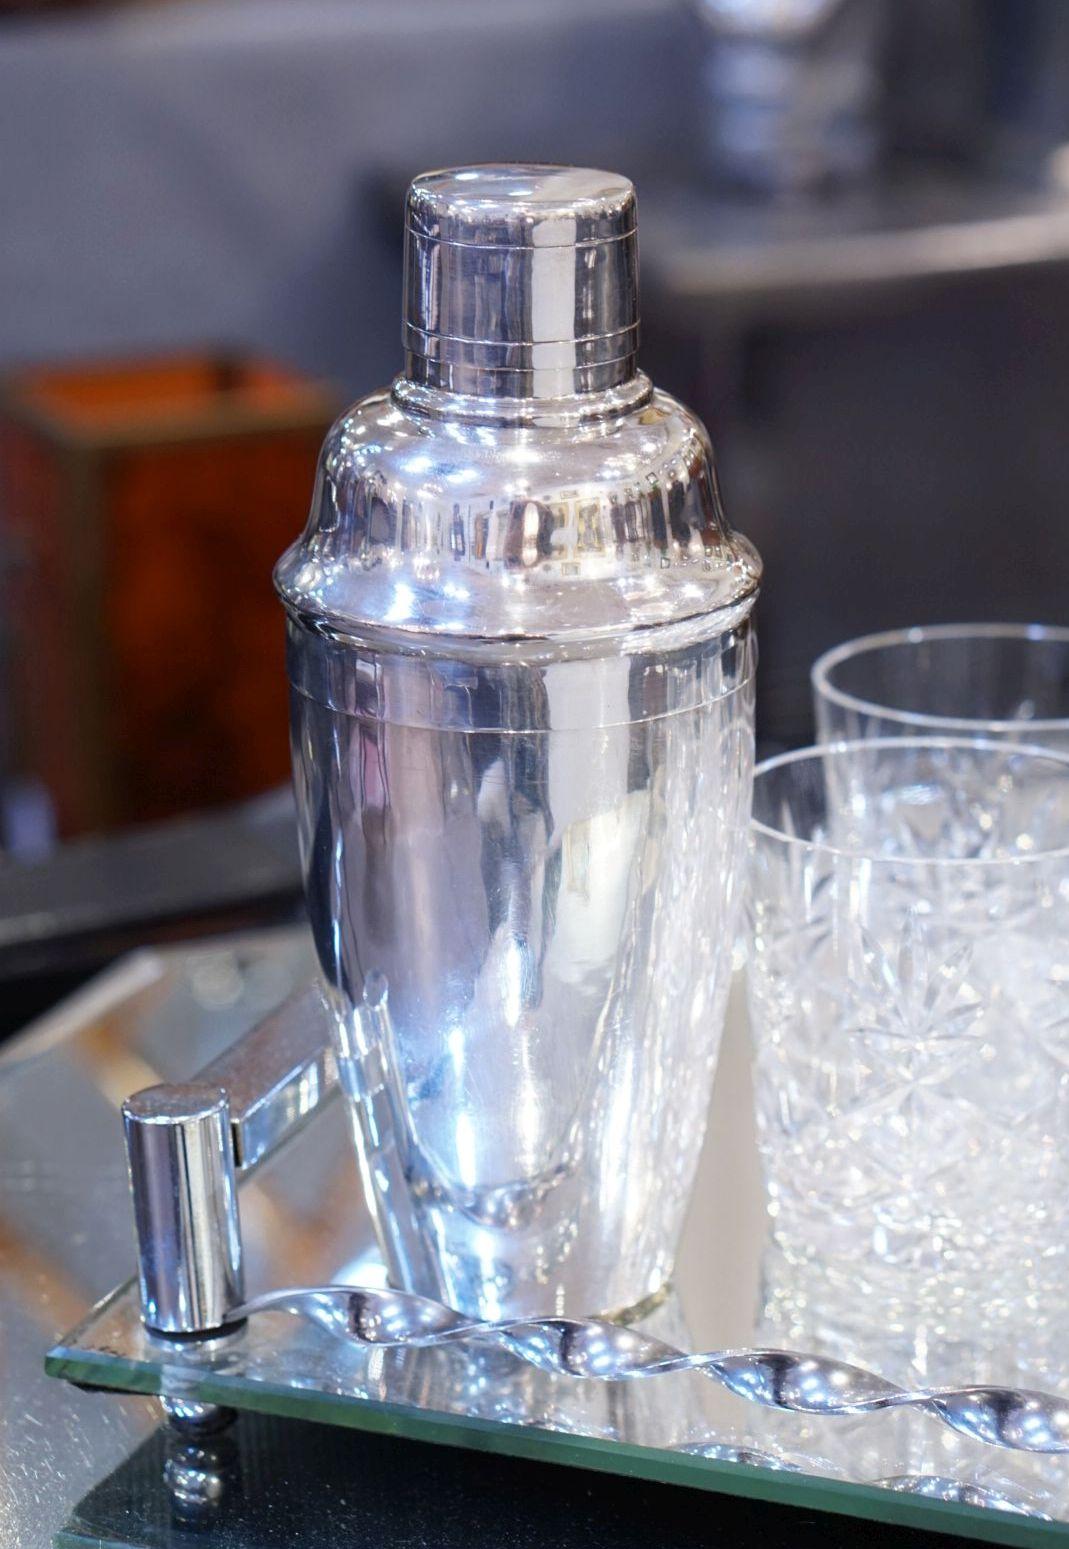 Un shaker à martini ou à cocktail cylindrique anglais vintage en argent fin avec un design Art Déco élégant, avec un bouchon amovible et une passoire.

Marque imprimée à la base : Van Buren

Parfait pour le bar. Encore mieux pour les martinis.